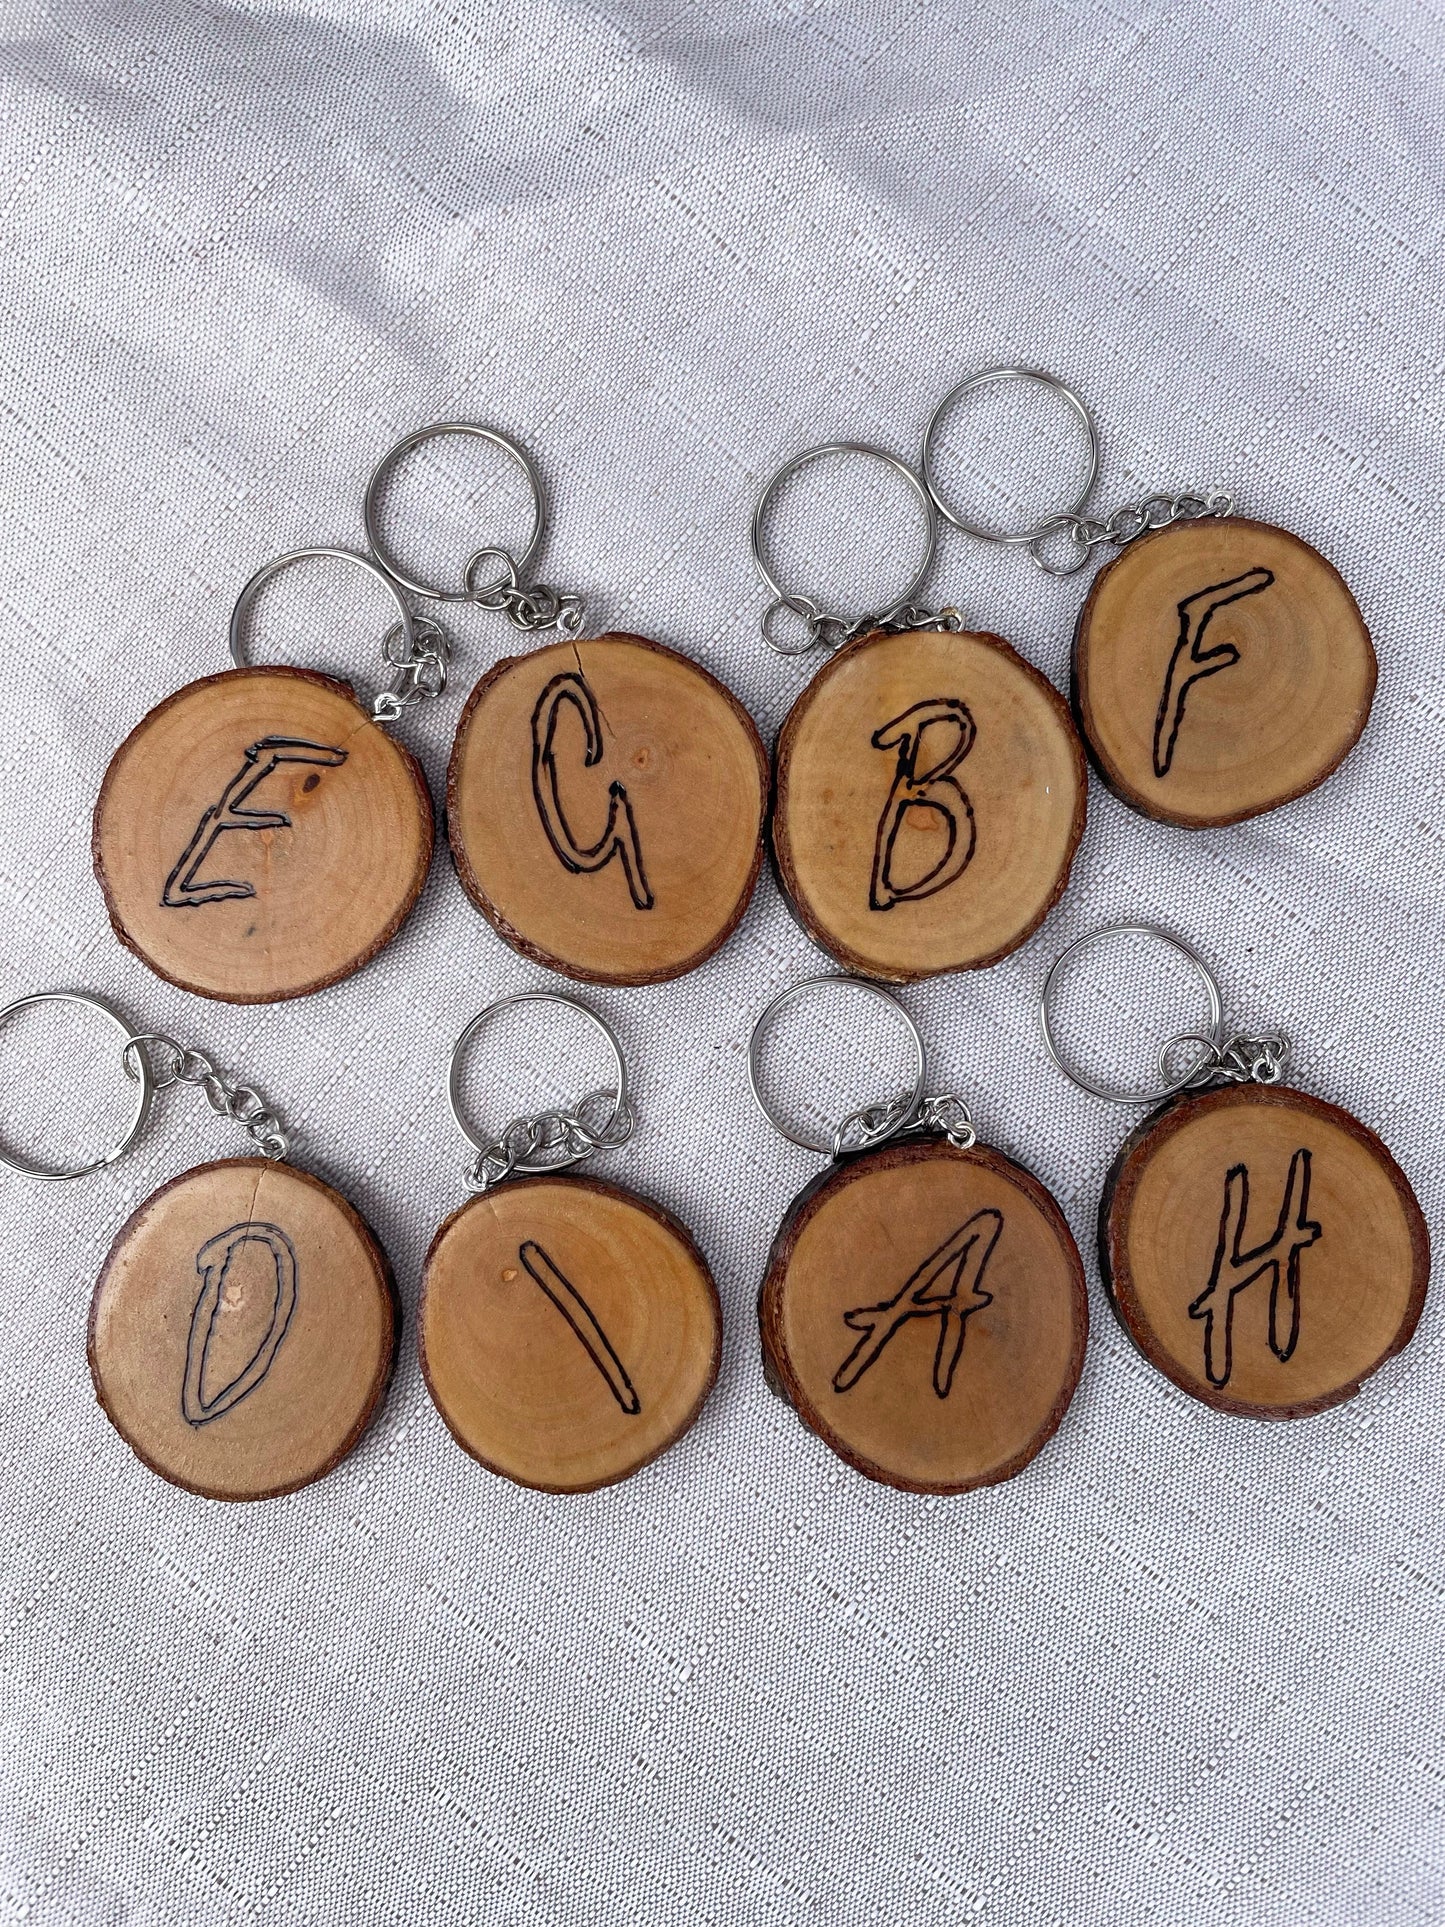 Wooden letter keyrings